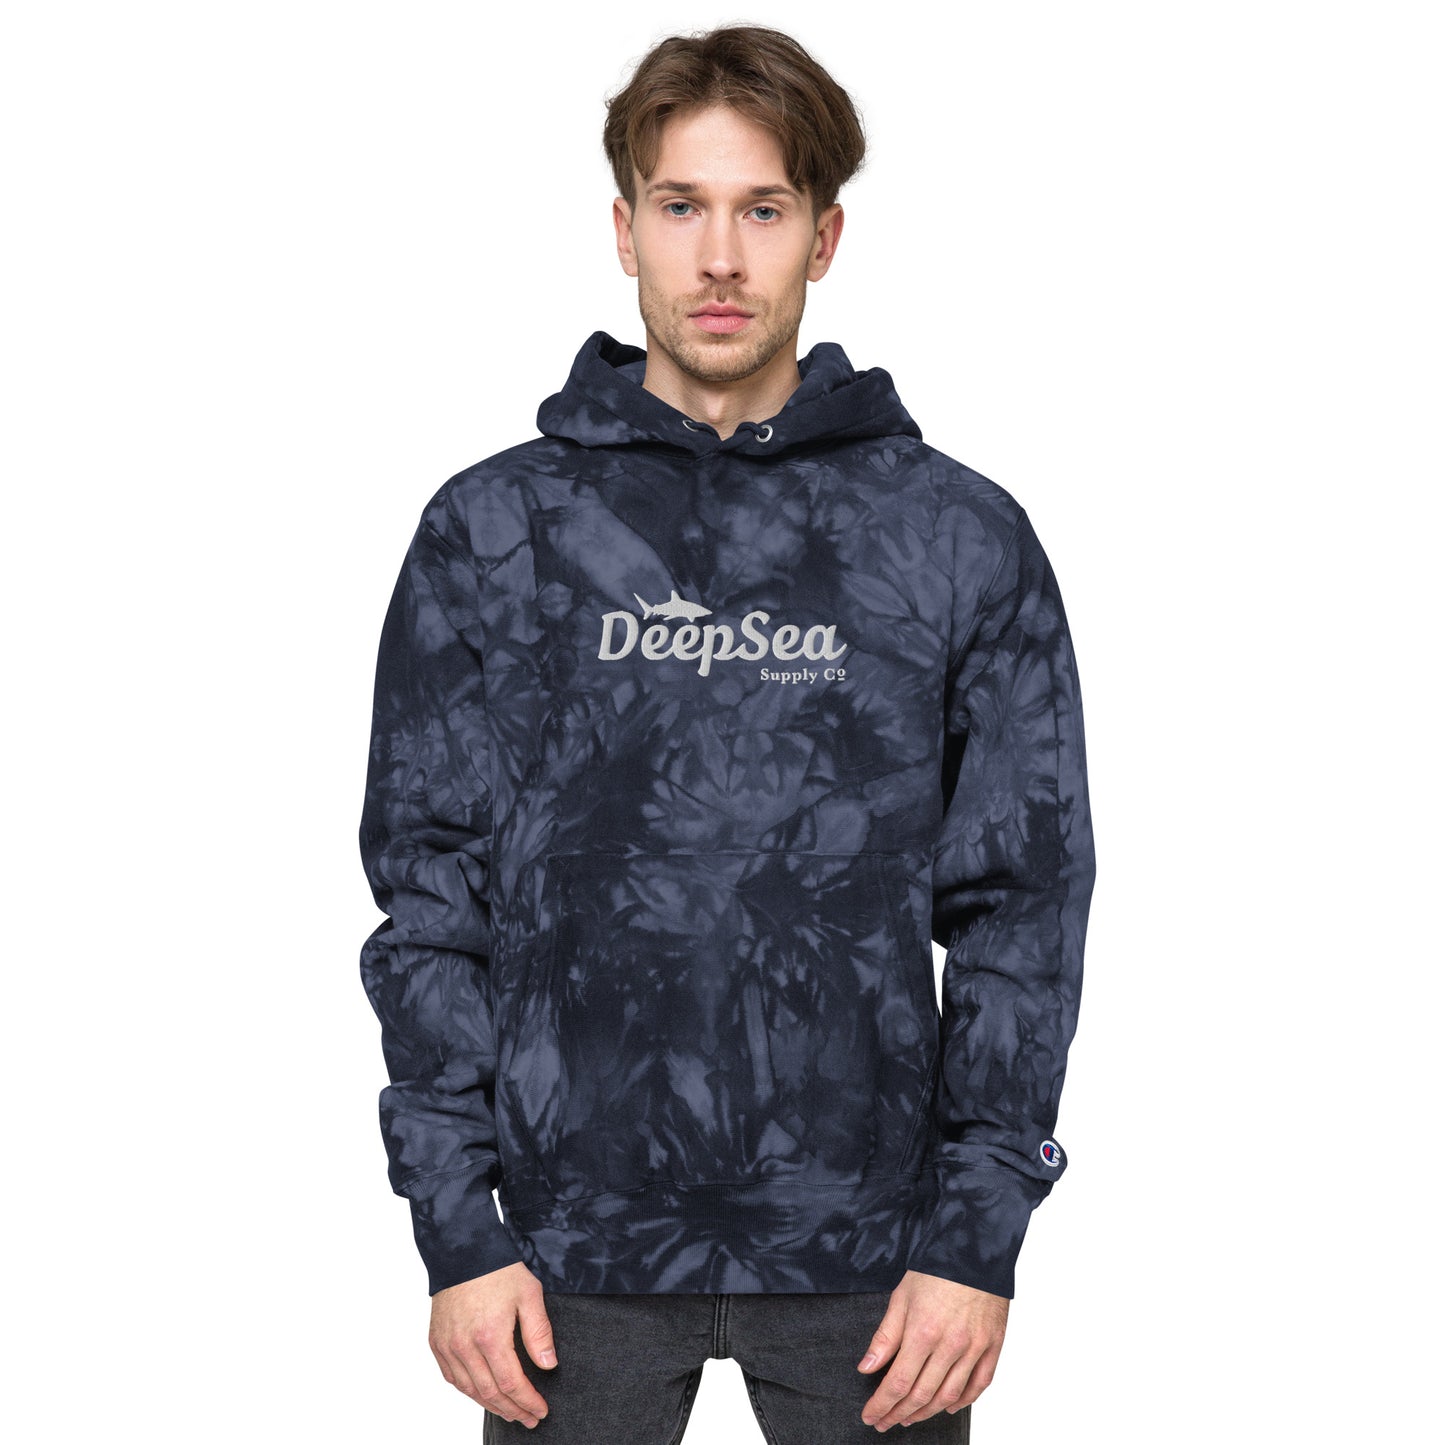 DeepSea Co. Unisex Champion tie-dye hoodie